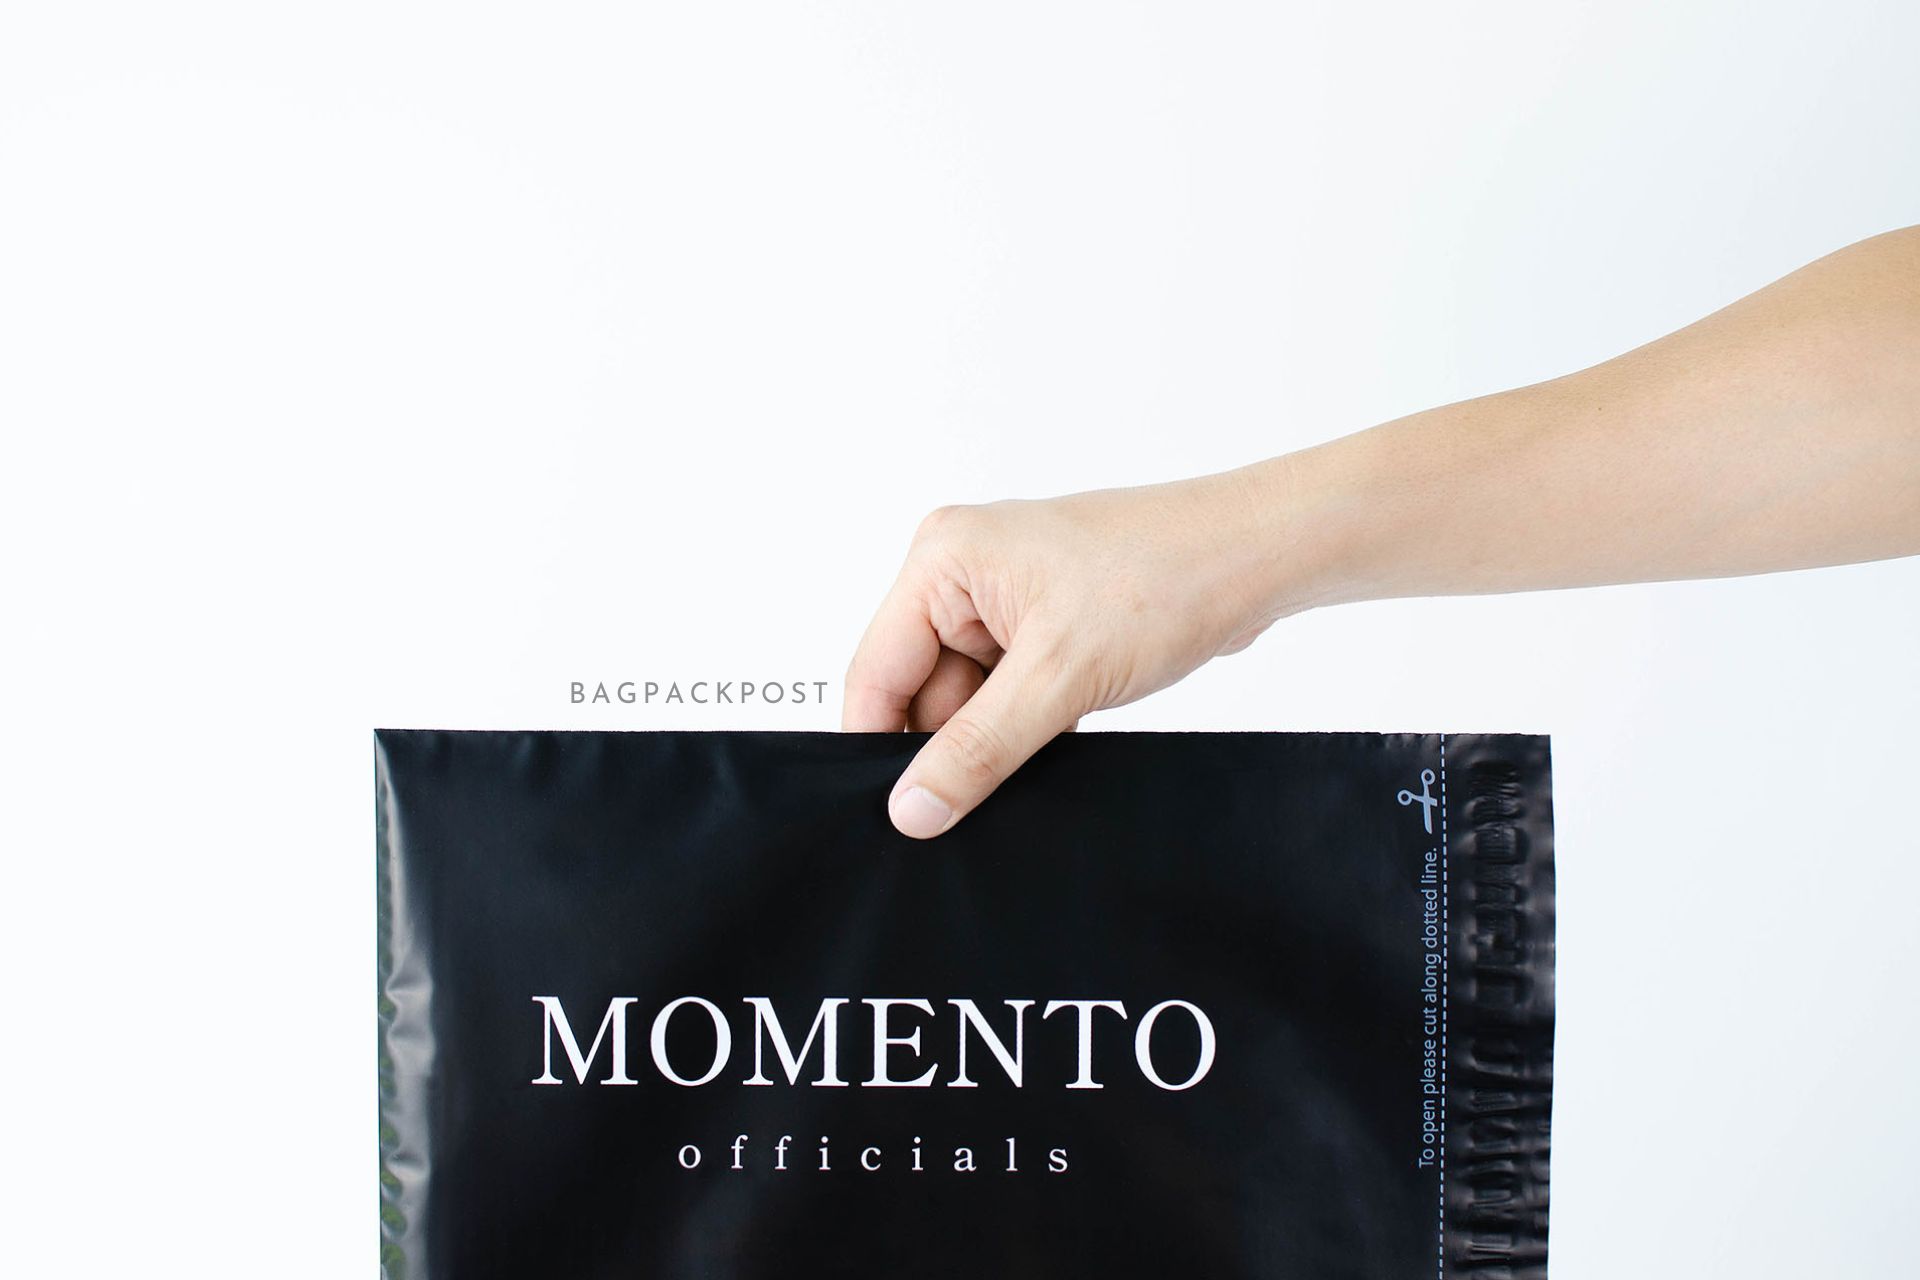 ผลิตถุงไปรษณีย์ ซองไปรษณีย์พิมพ์ลาย แบรนด์ Momento ซองไปรษณีย์สีดำ ถุงไปรษณีย์พิมพ์ลาย 3 BagPackPost